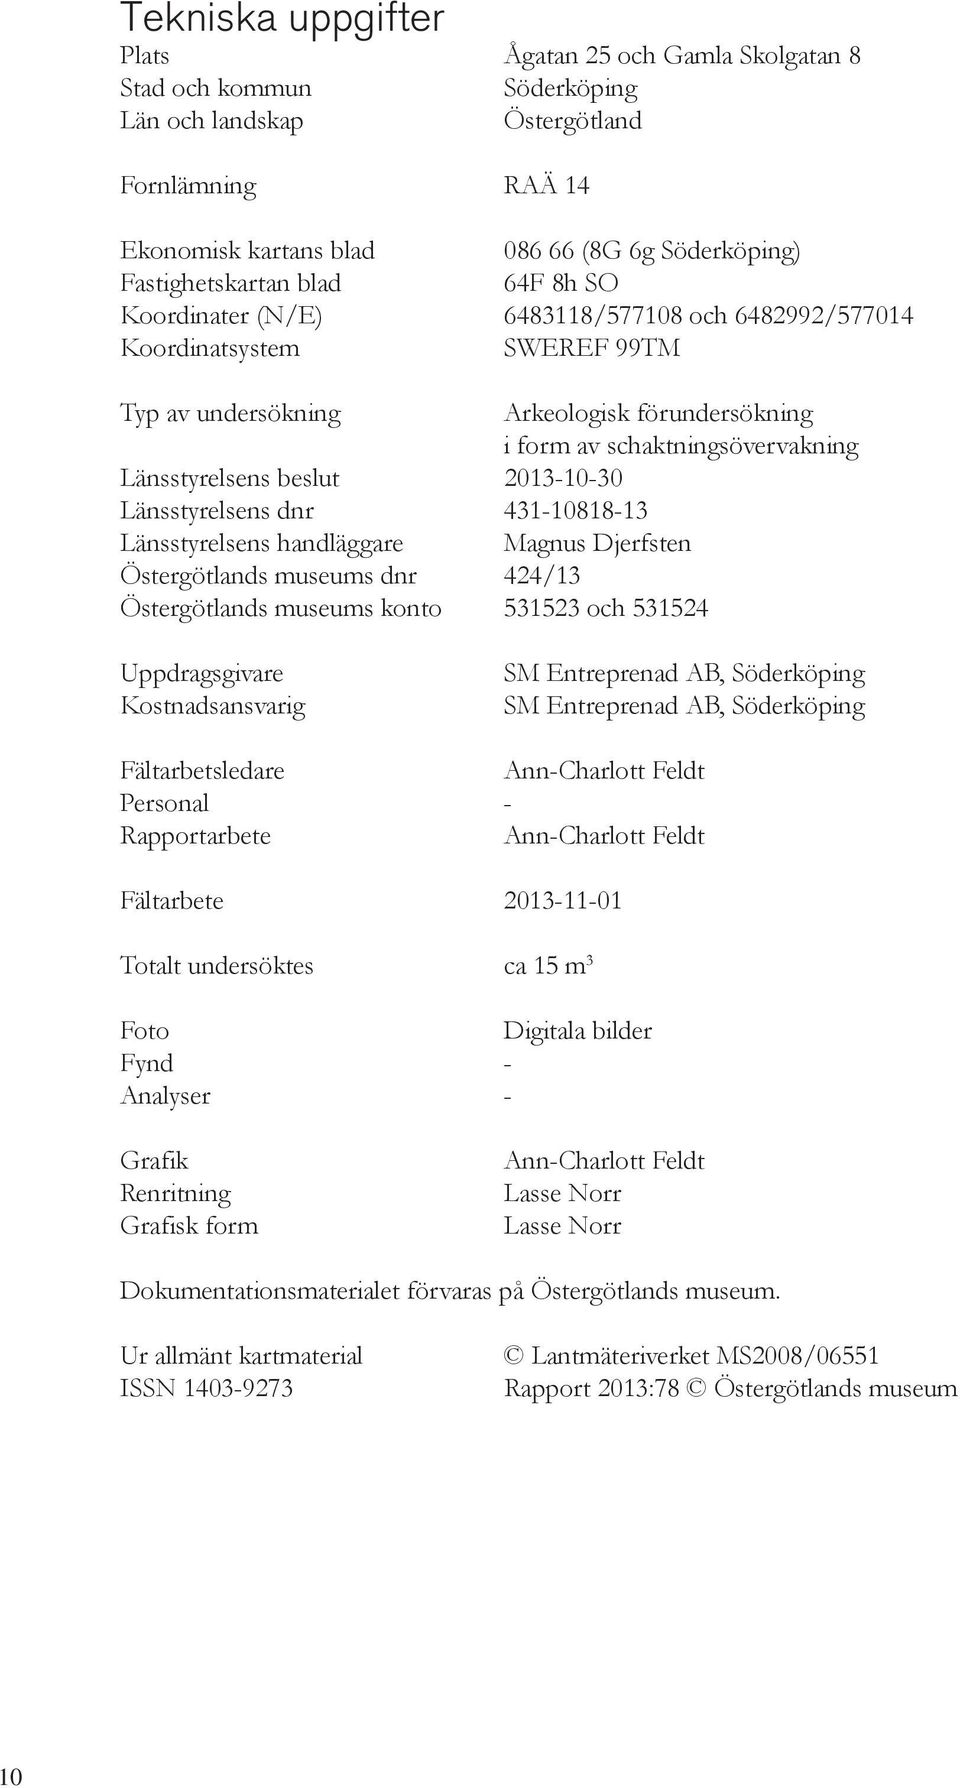 Länsstyrelsens beslut 2013-10-30 Länsstyrelsens dnr 431-10818-13 Länsstyrelsens handläggare Magnus Djerfsten Östergötlands museums dnr 424/13 Östergötlands museums konto 531523 och 531524